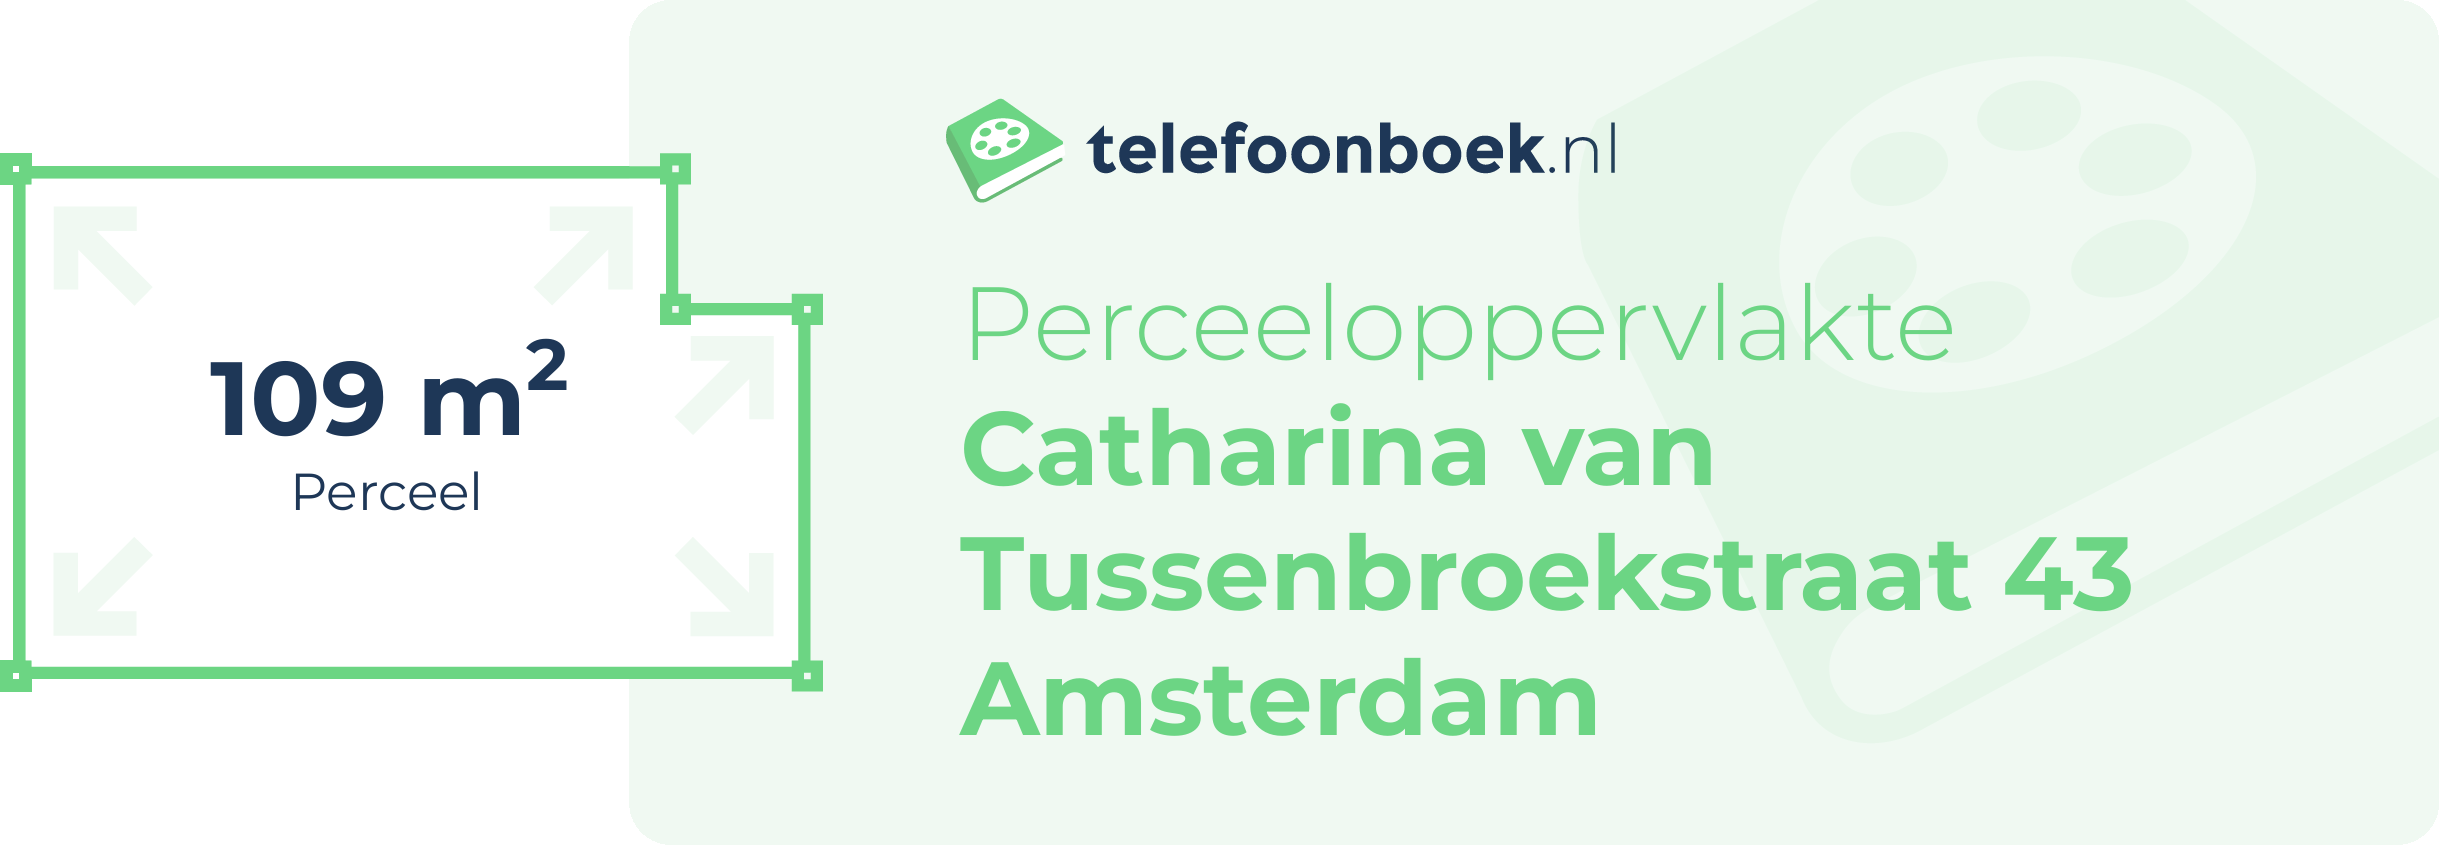 Perceeloppervlakte Catharina Van Tussenbroekstraat 43 Amsterdam